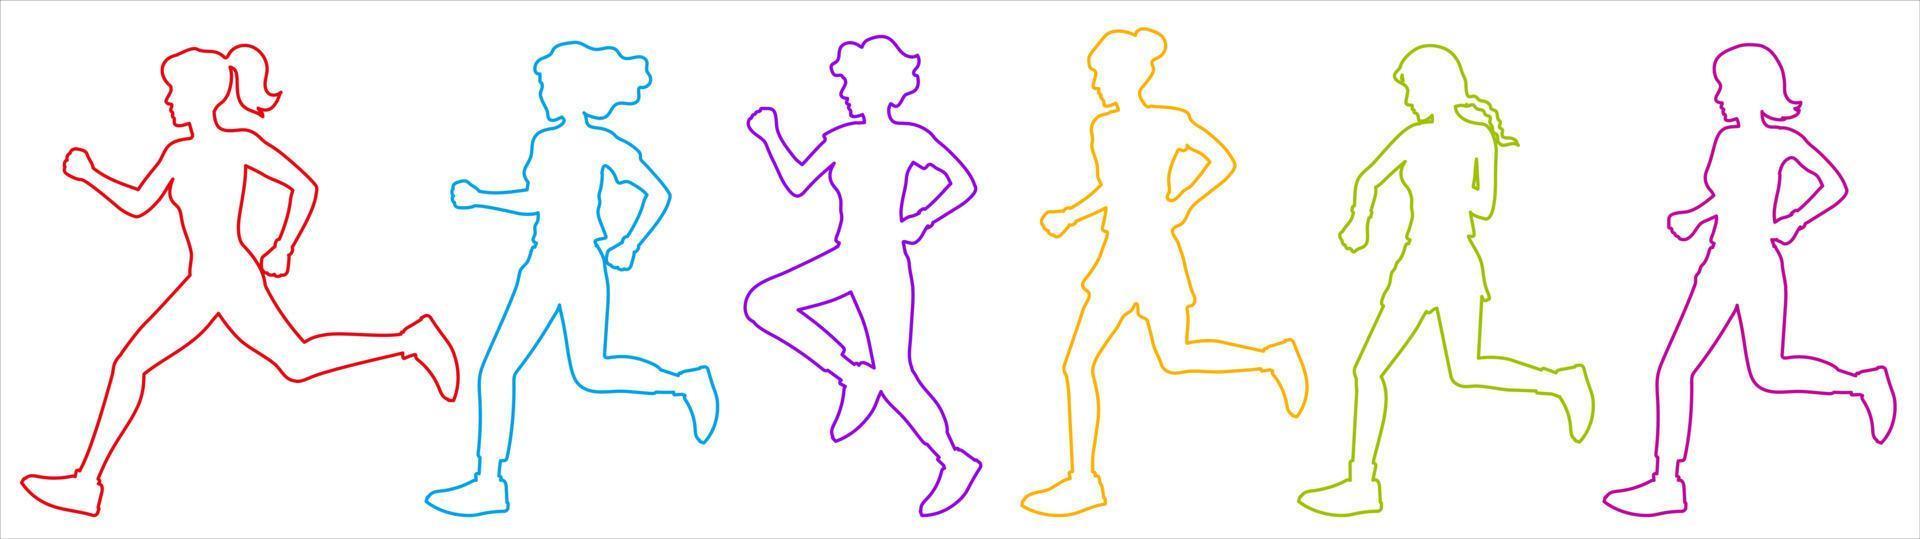 Satz von Konturen von laufenden Mädchen und Frauen in verschiedenen Farben. Silhouetten ohne Füllung auf weißem Hintergrund. Illustration für Sport und gesunden Lebensstil. vektor